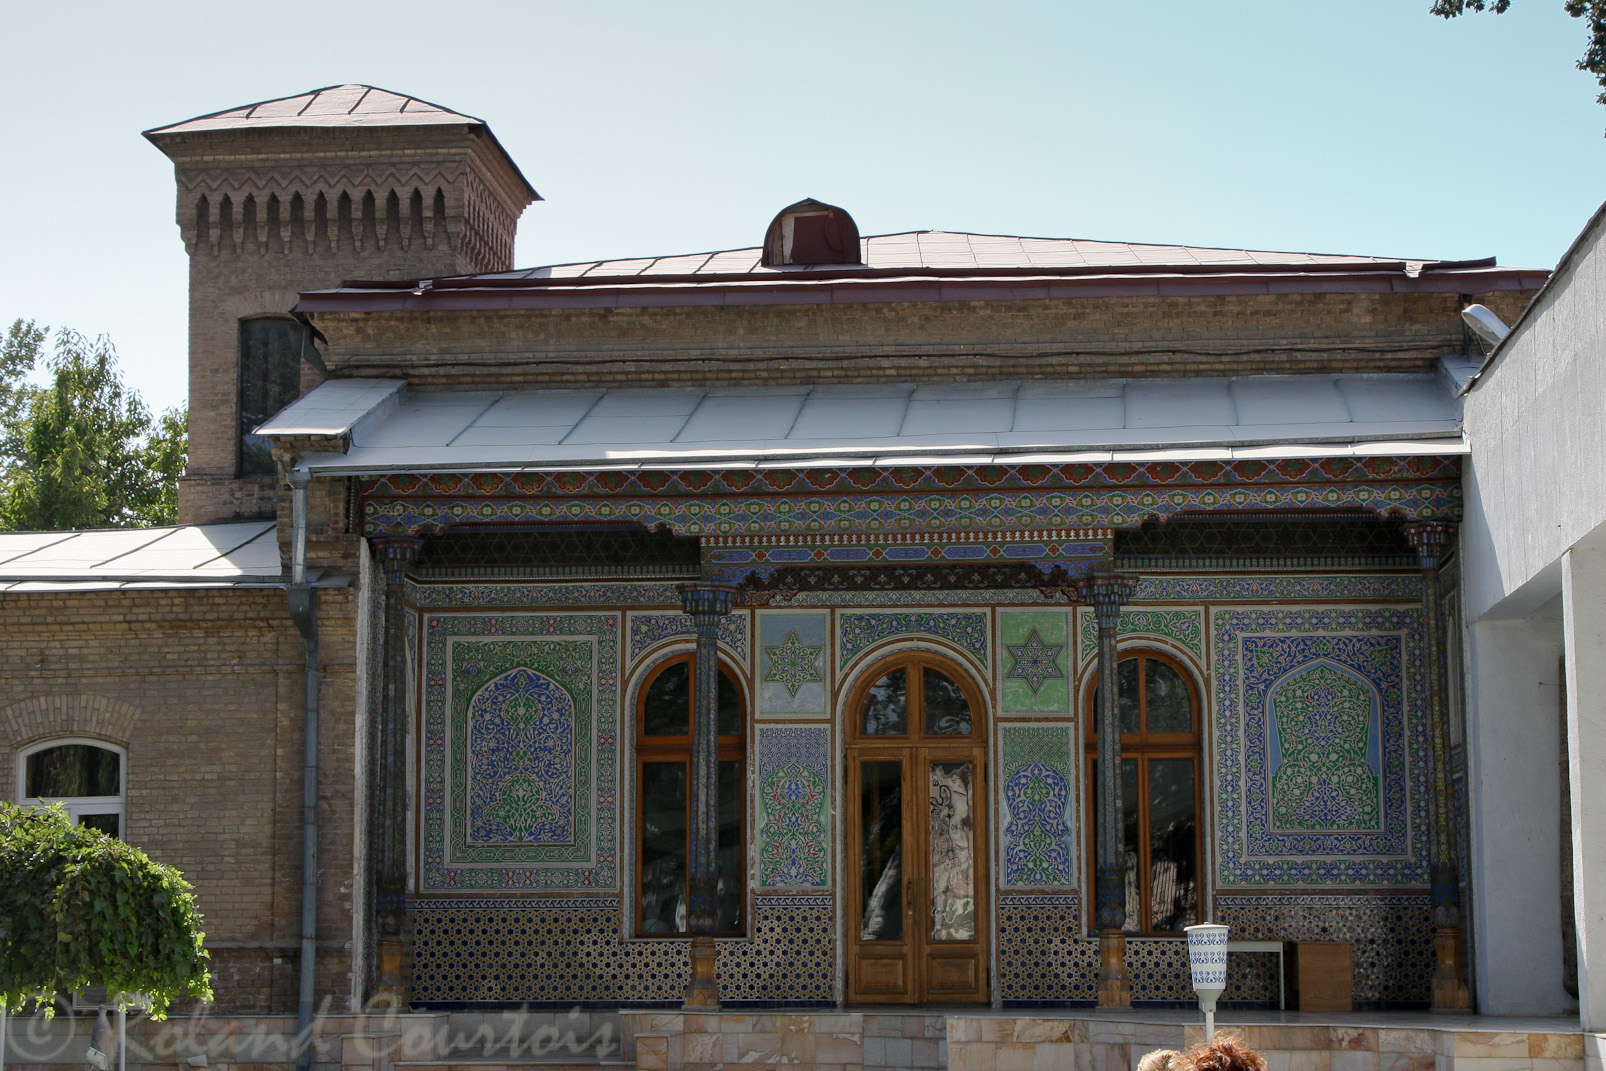 Musée des arts décoratifs, installé dans la maison d'un ancien diplomate russe.